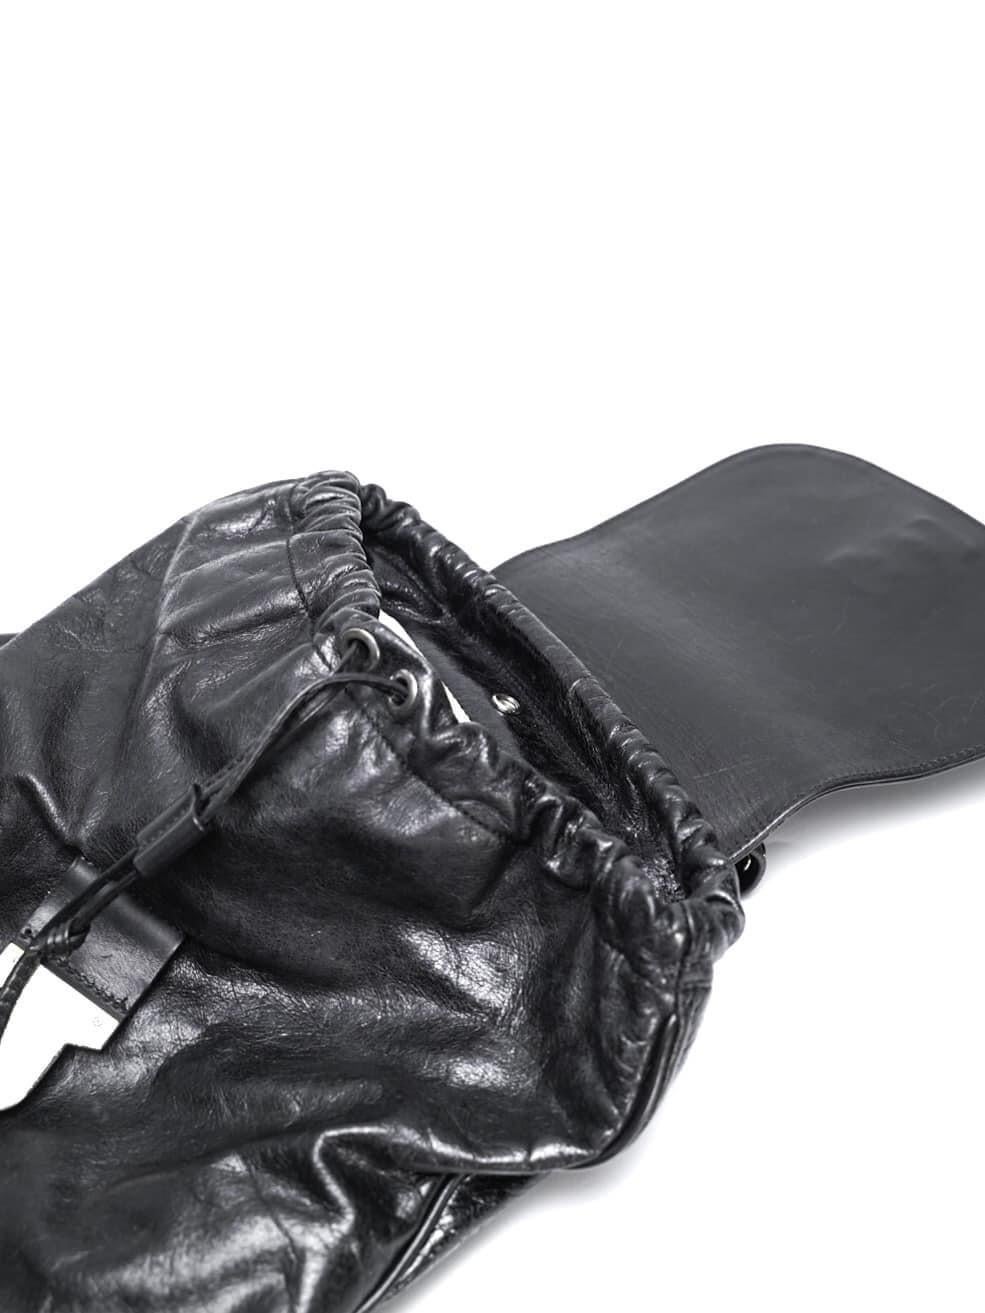 Maison Margiela Stud-Embellished Black Leather Backpack For Sale 2